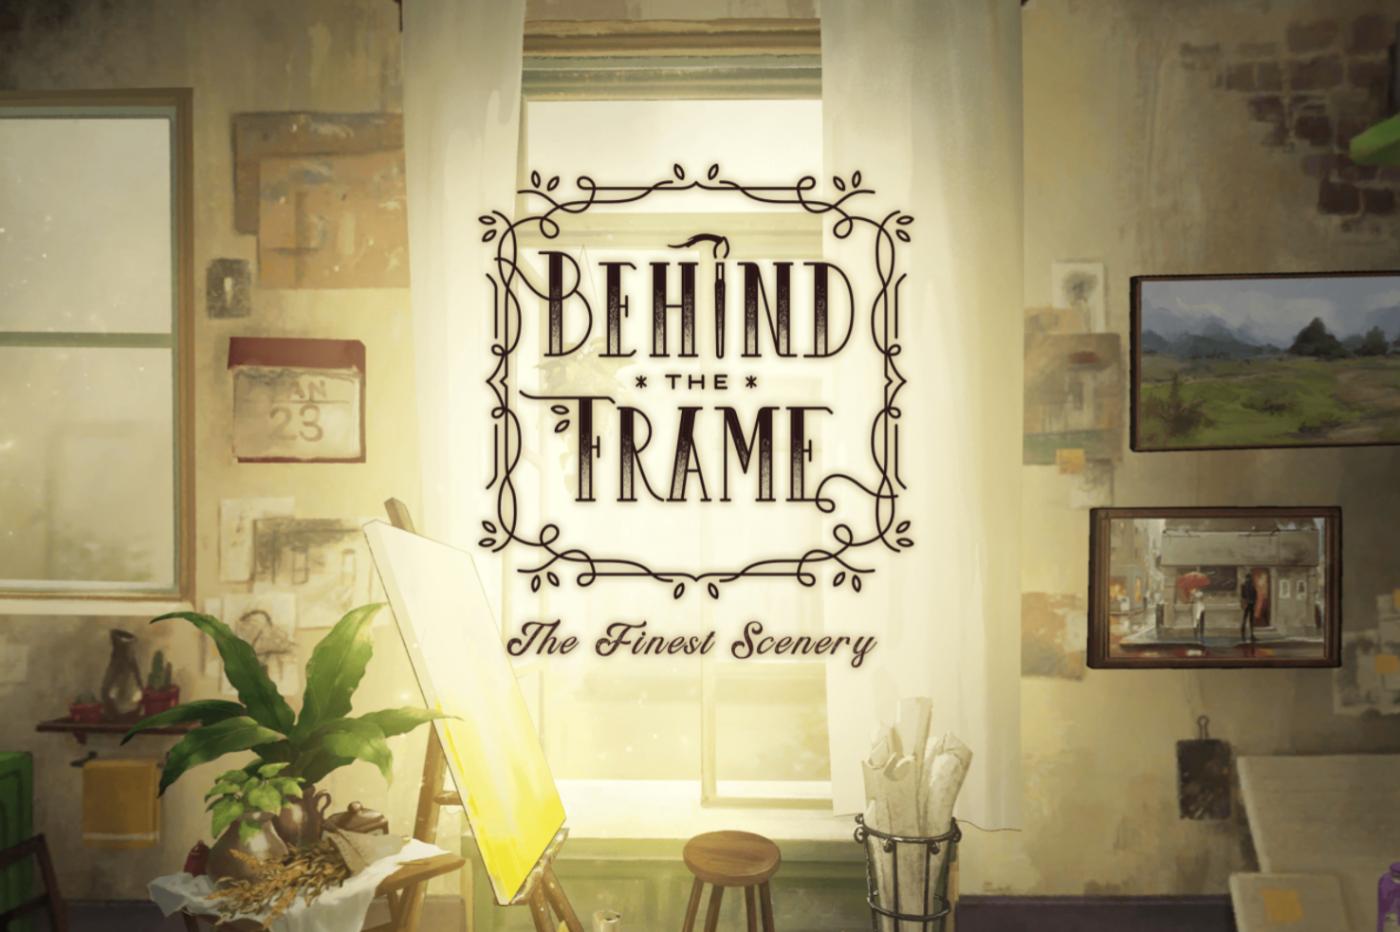 Behind the frame jeu mobile Ghibli